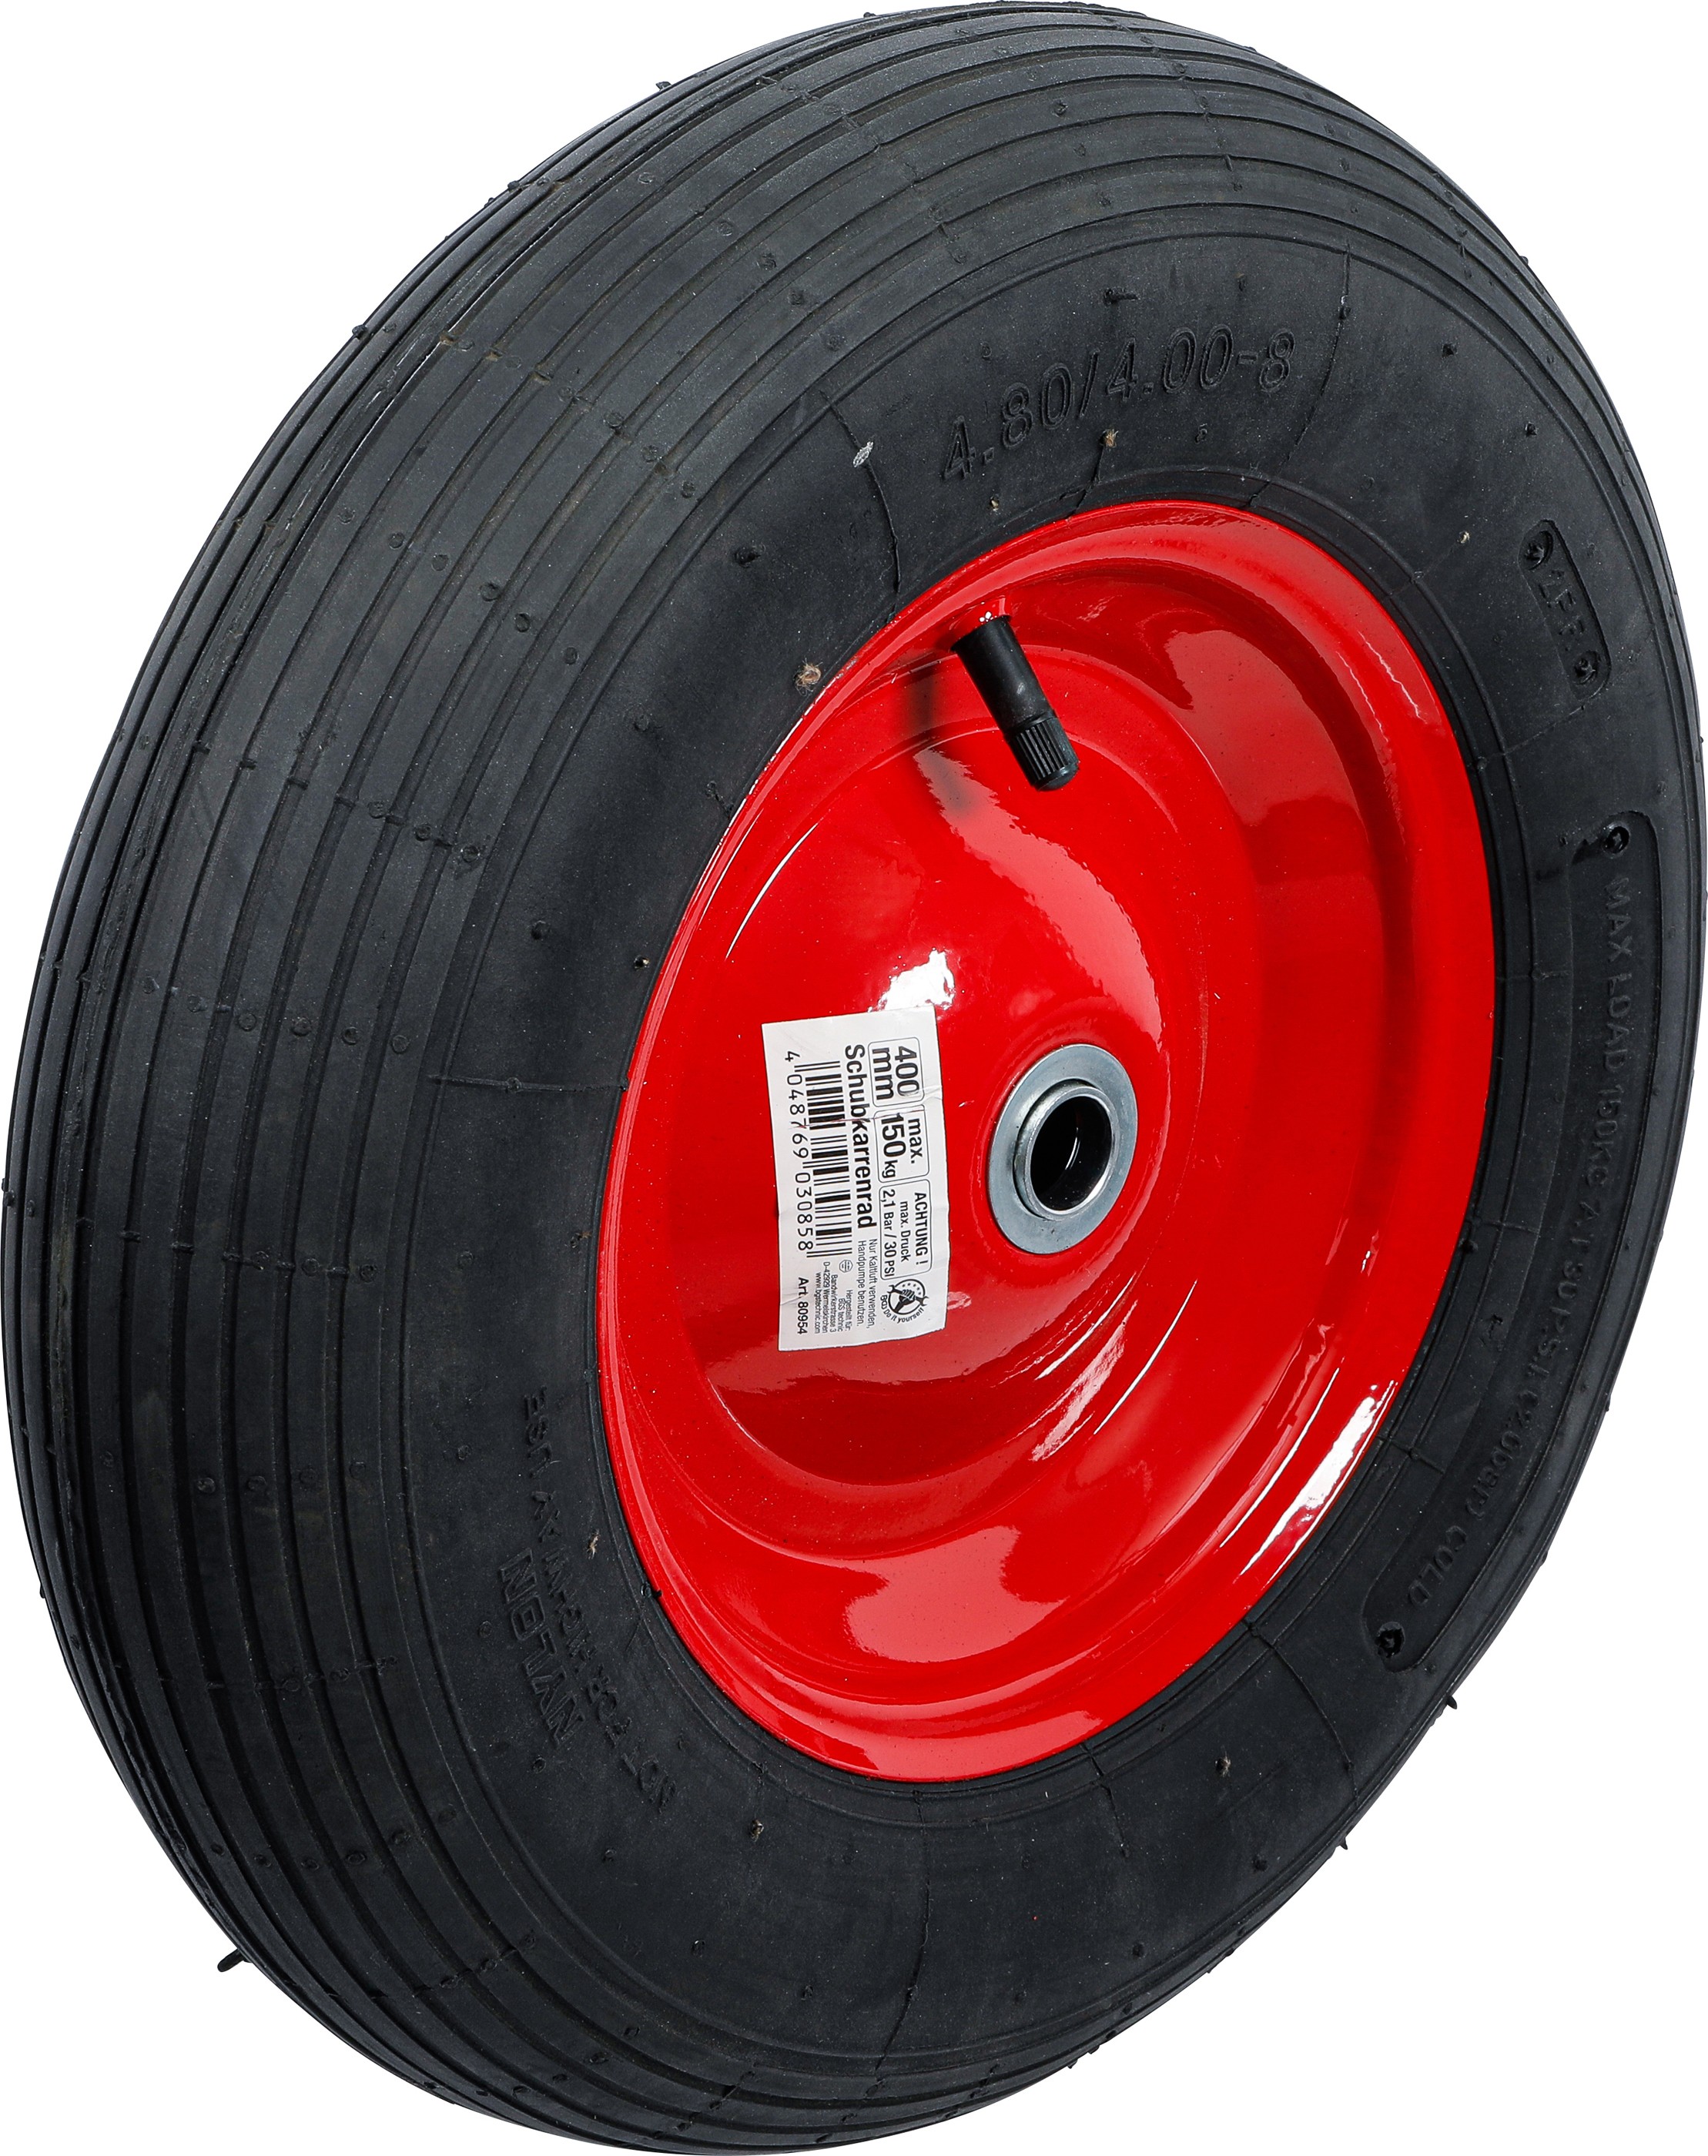 Colle de réparation de pneus d'automobile, mastic de pneu en caoutchouc,  vinyle spécial spéciale Mastic pneu Utilisations: métal, plastique